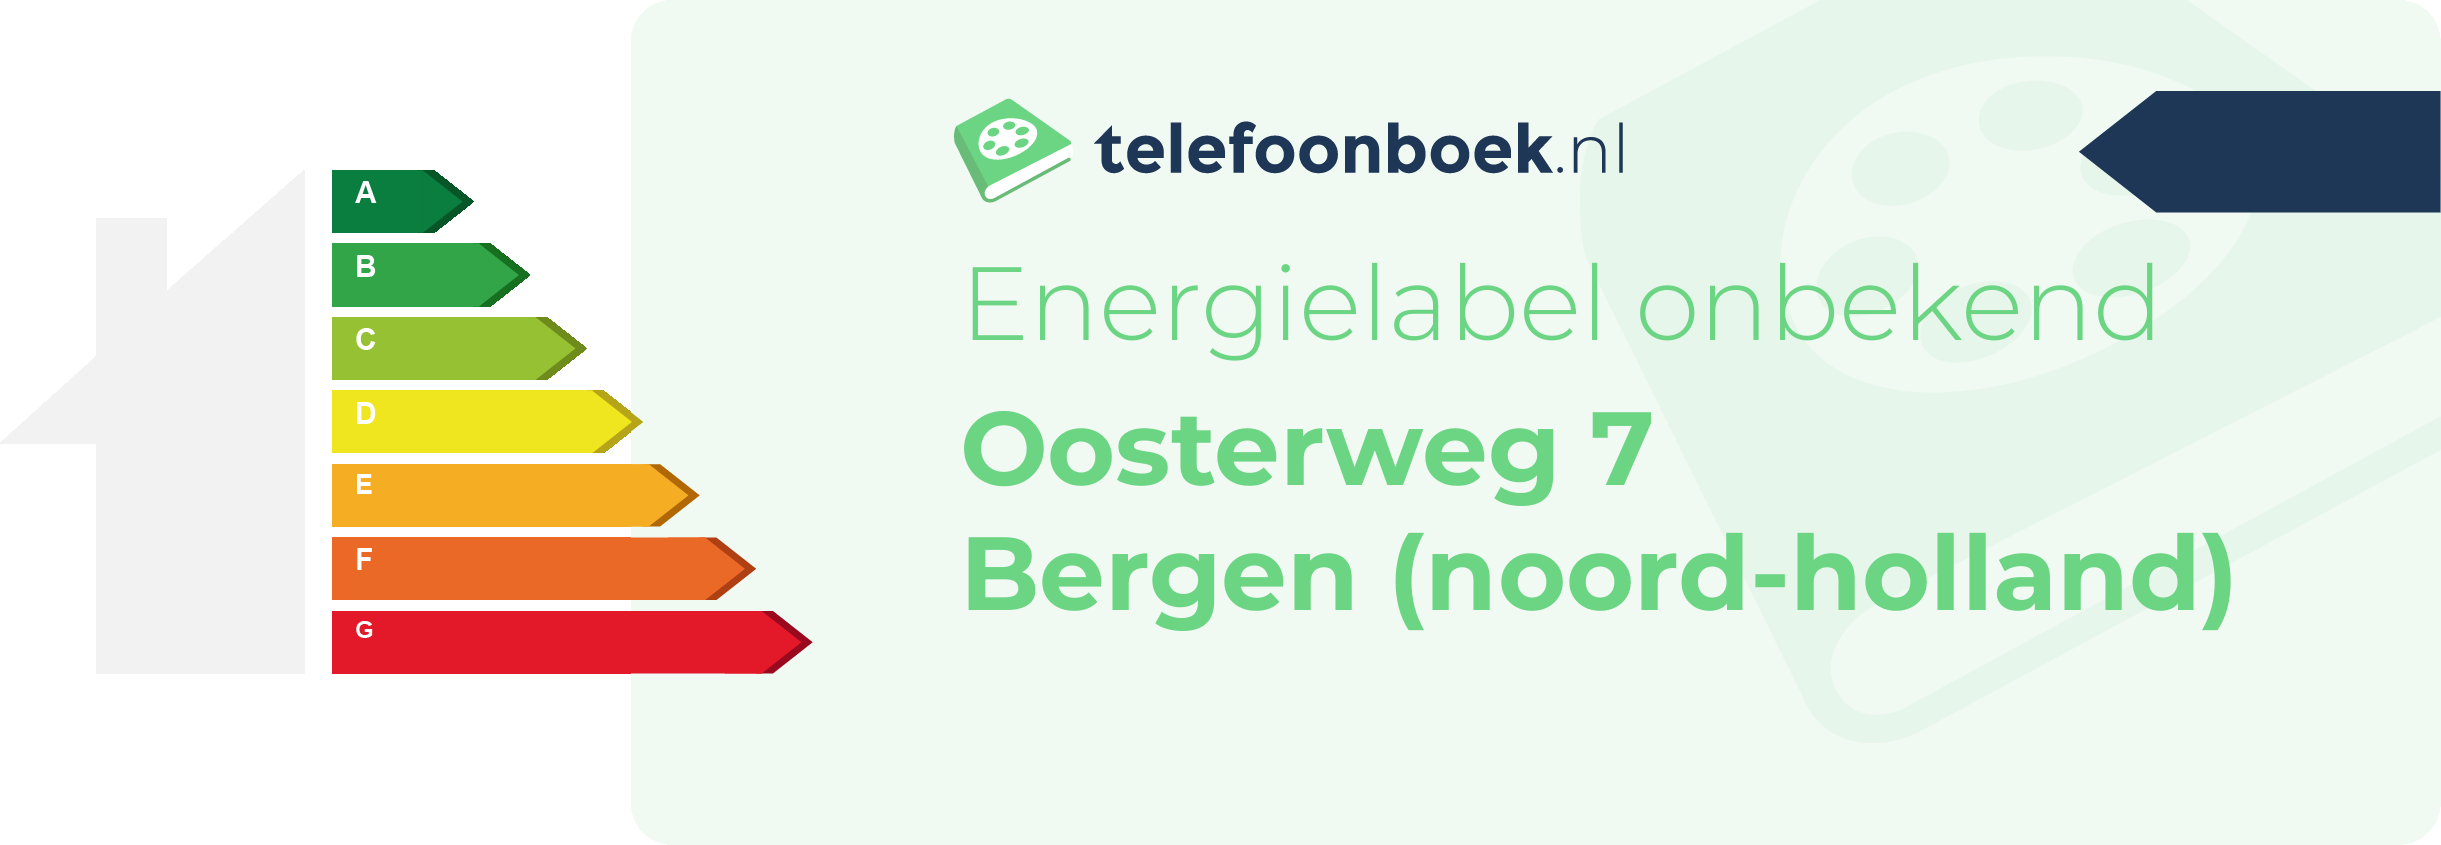 Energielabel Oosterweg 7 Bergen (Noord-Holland)